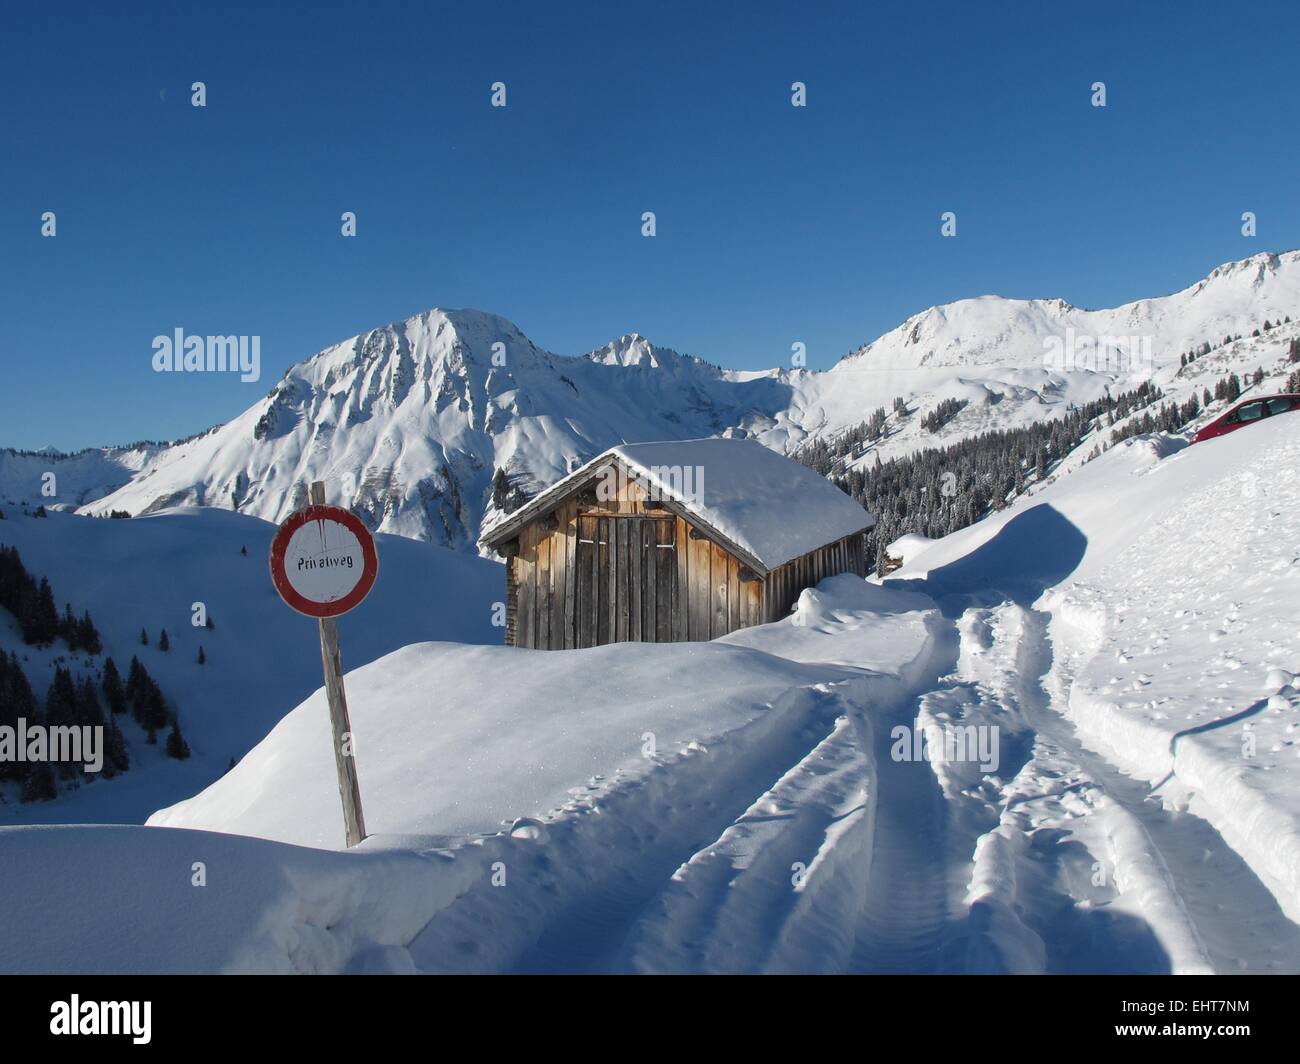 Mountain hut in deep snow Stock Photo